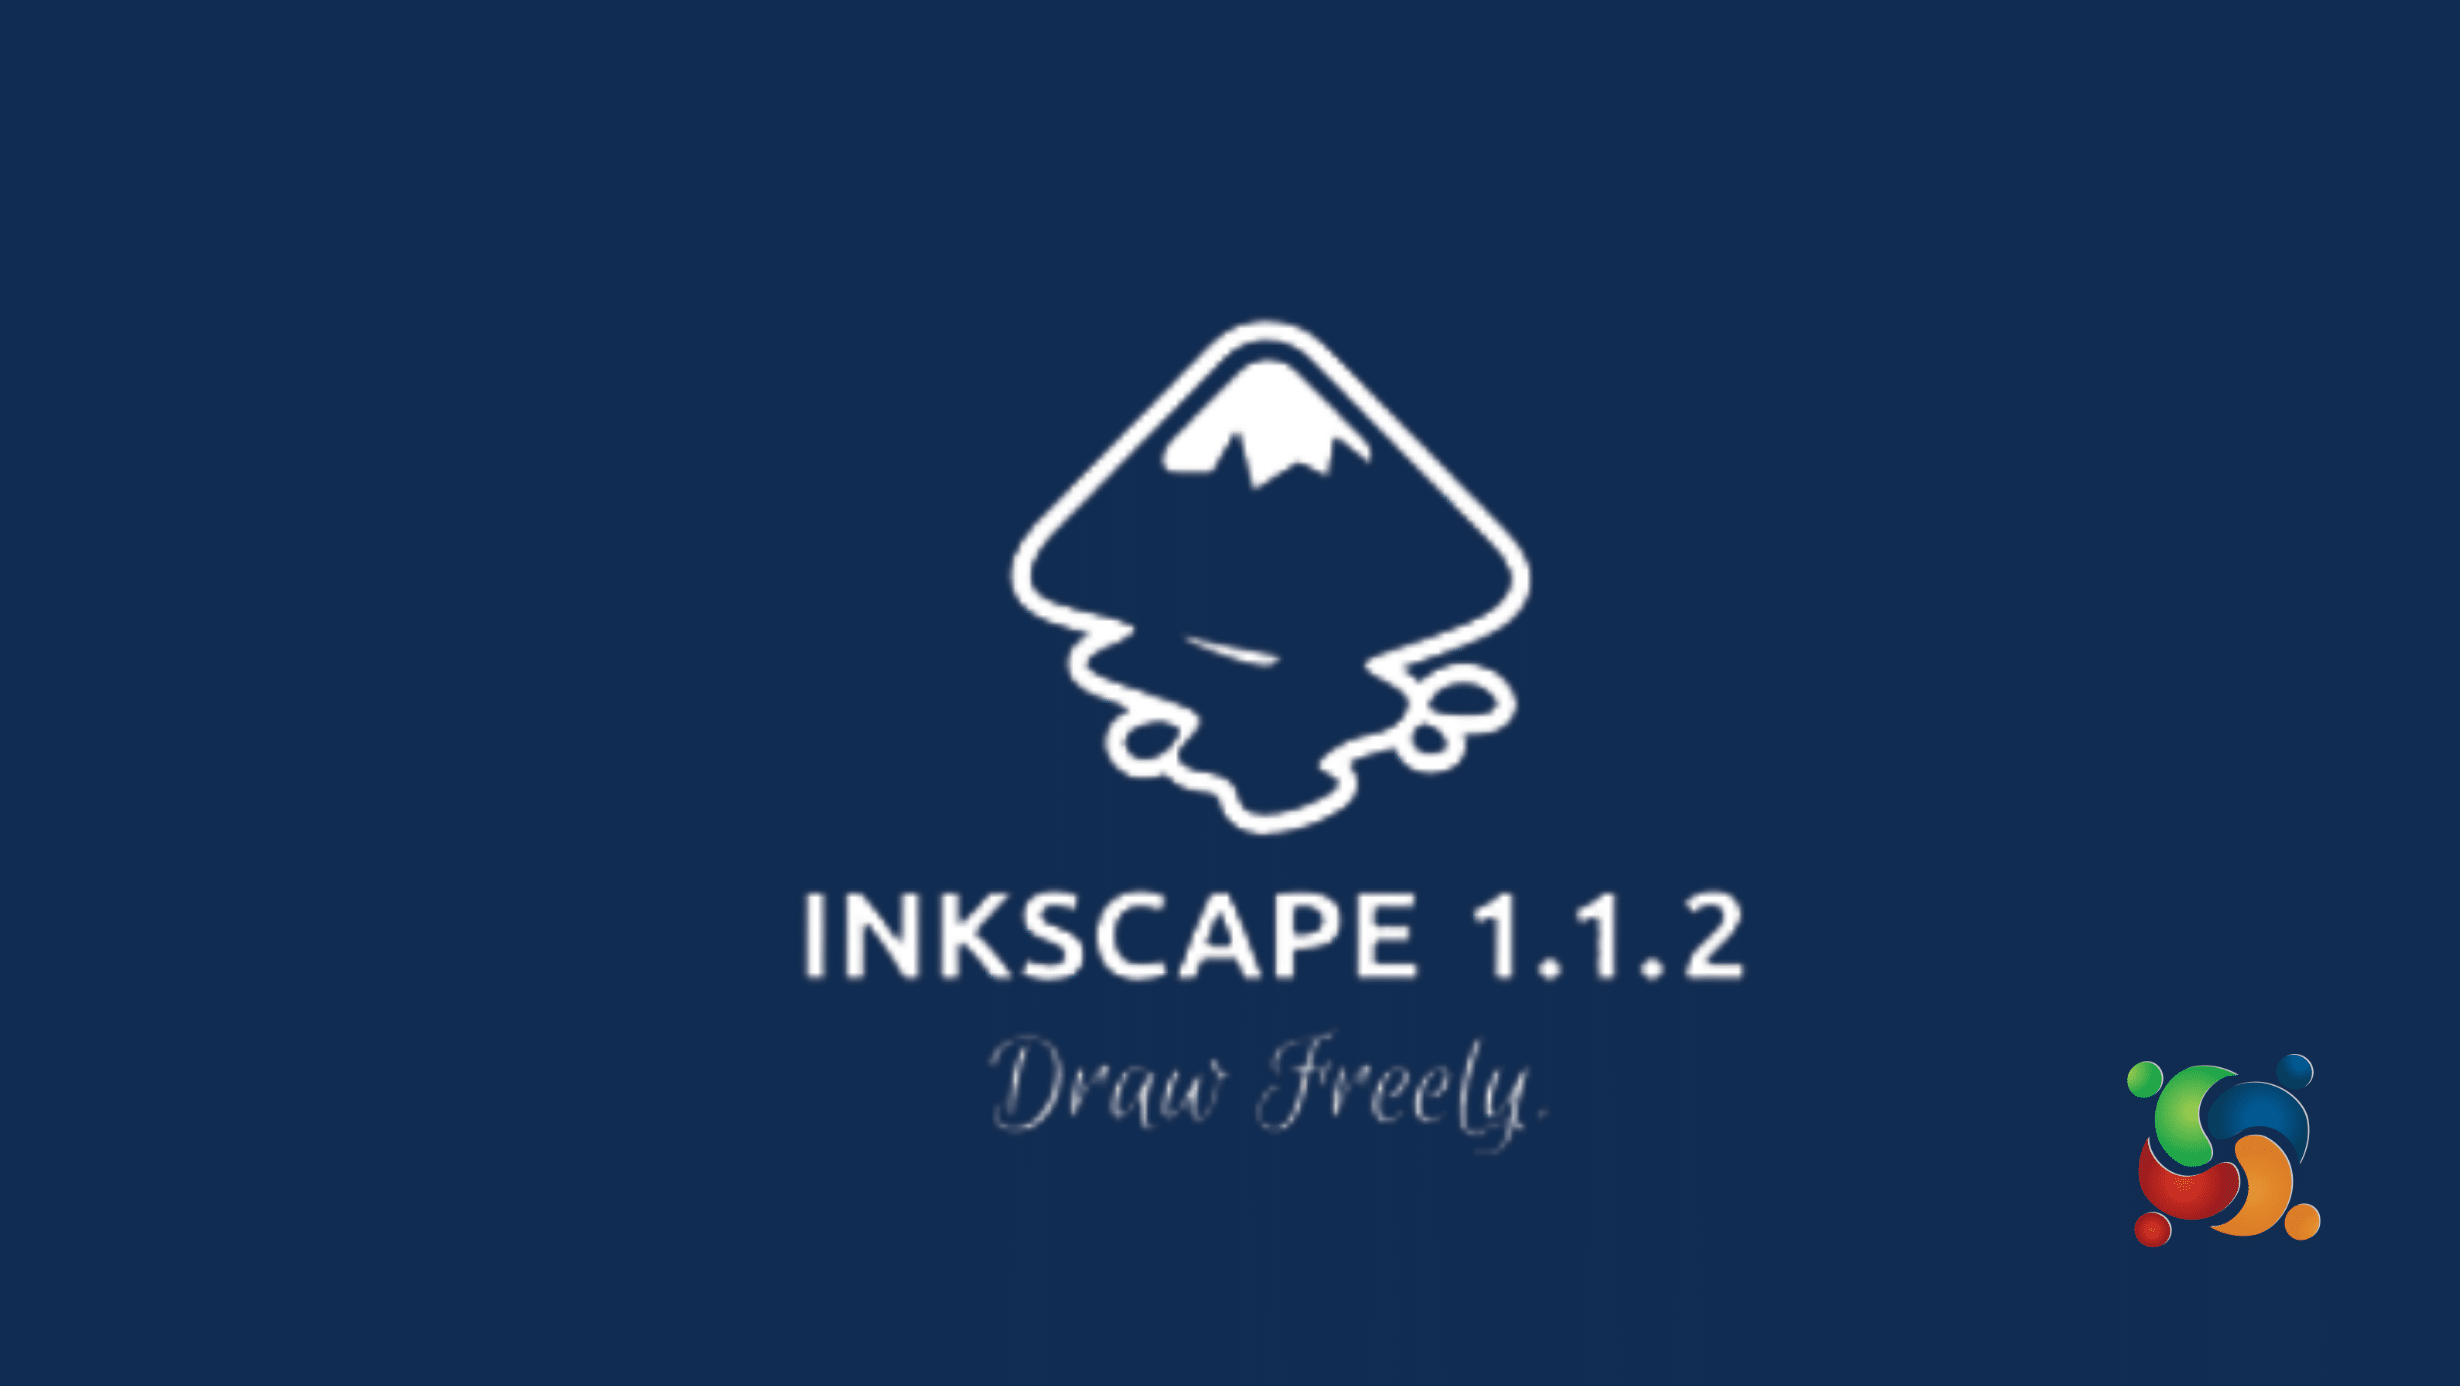 Inkscape 1.1.2 vem com correções de bugs e Inkscape 1.2 promete grandes mudanças